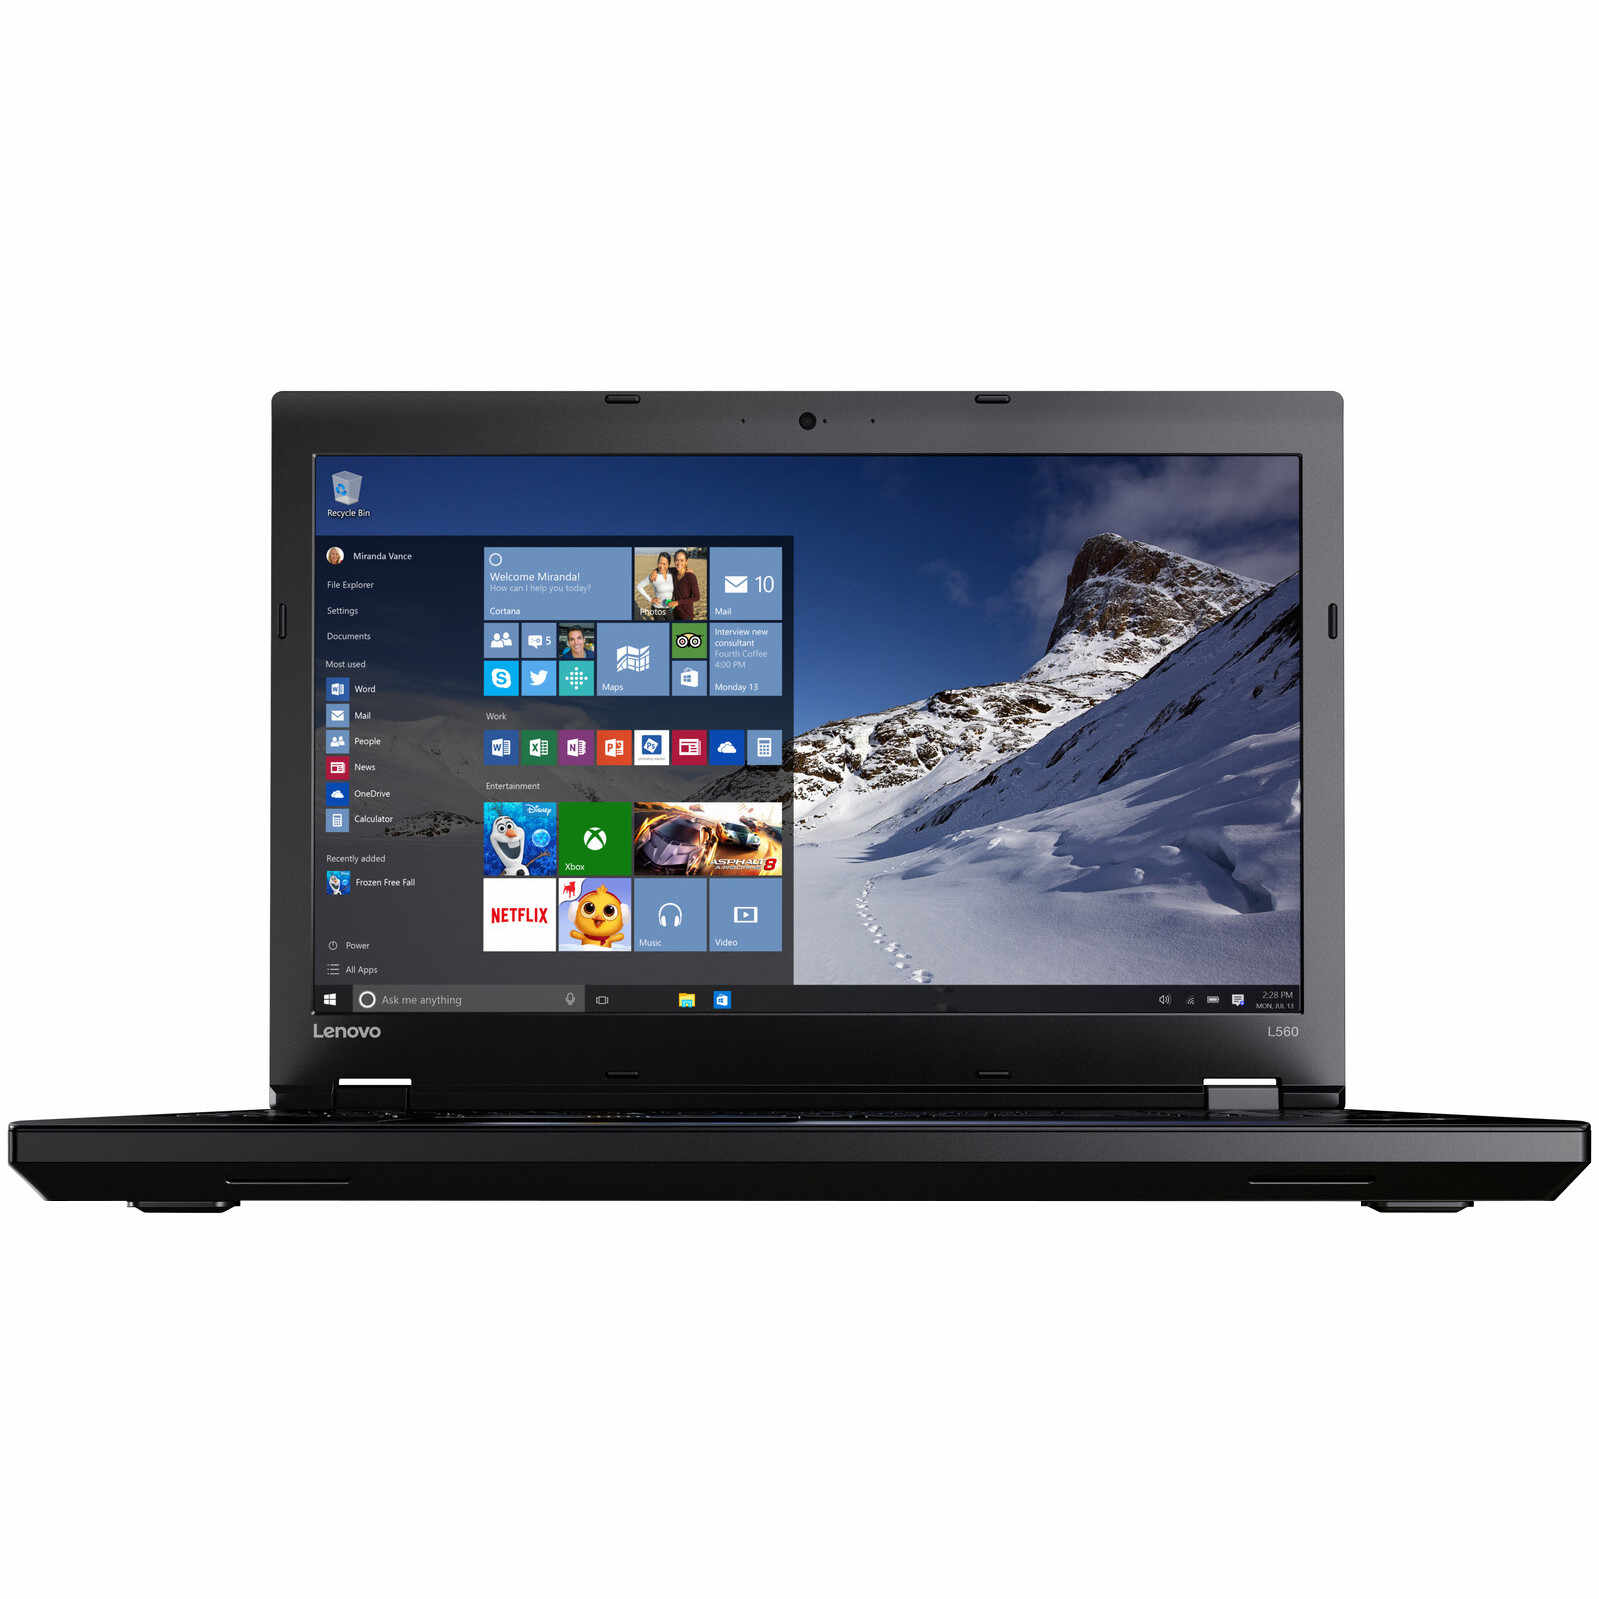 Laptop Lenovo ThinkPad L560, Intel Core i5-6200U, 4GB DDR3, HDD 500GB, Intel HD Graphics, Windows 7 Pro